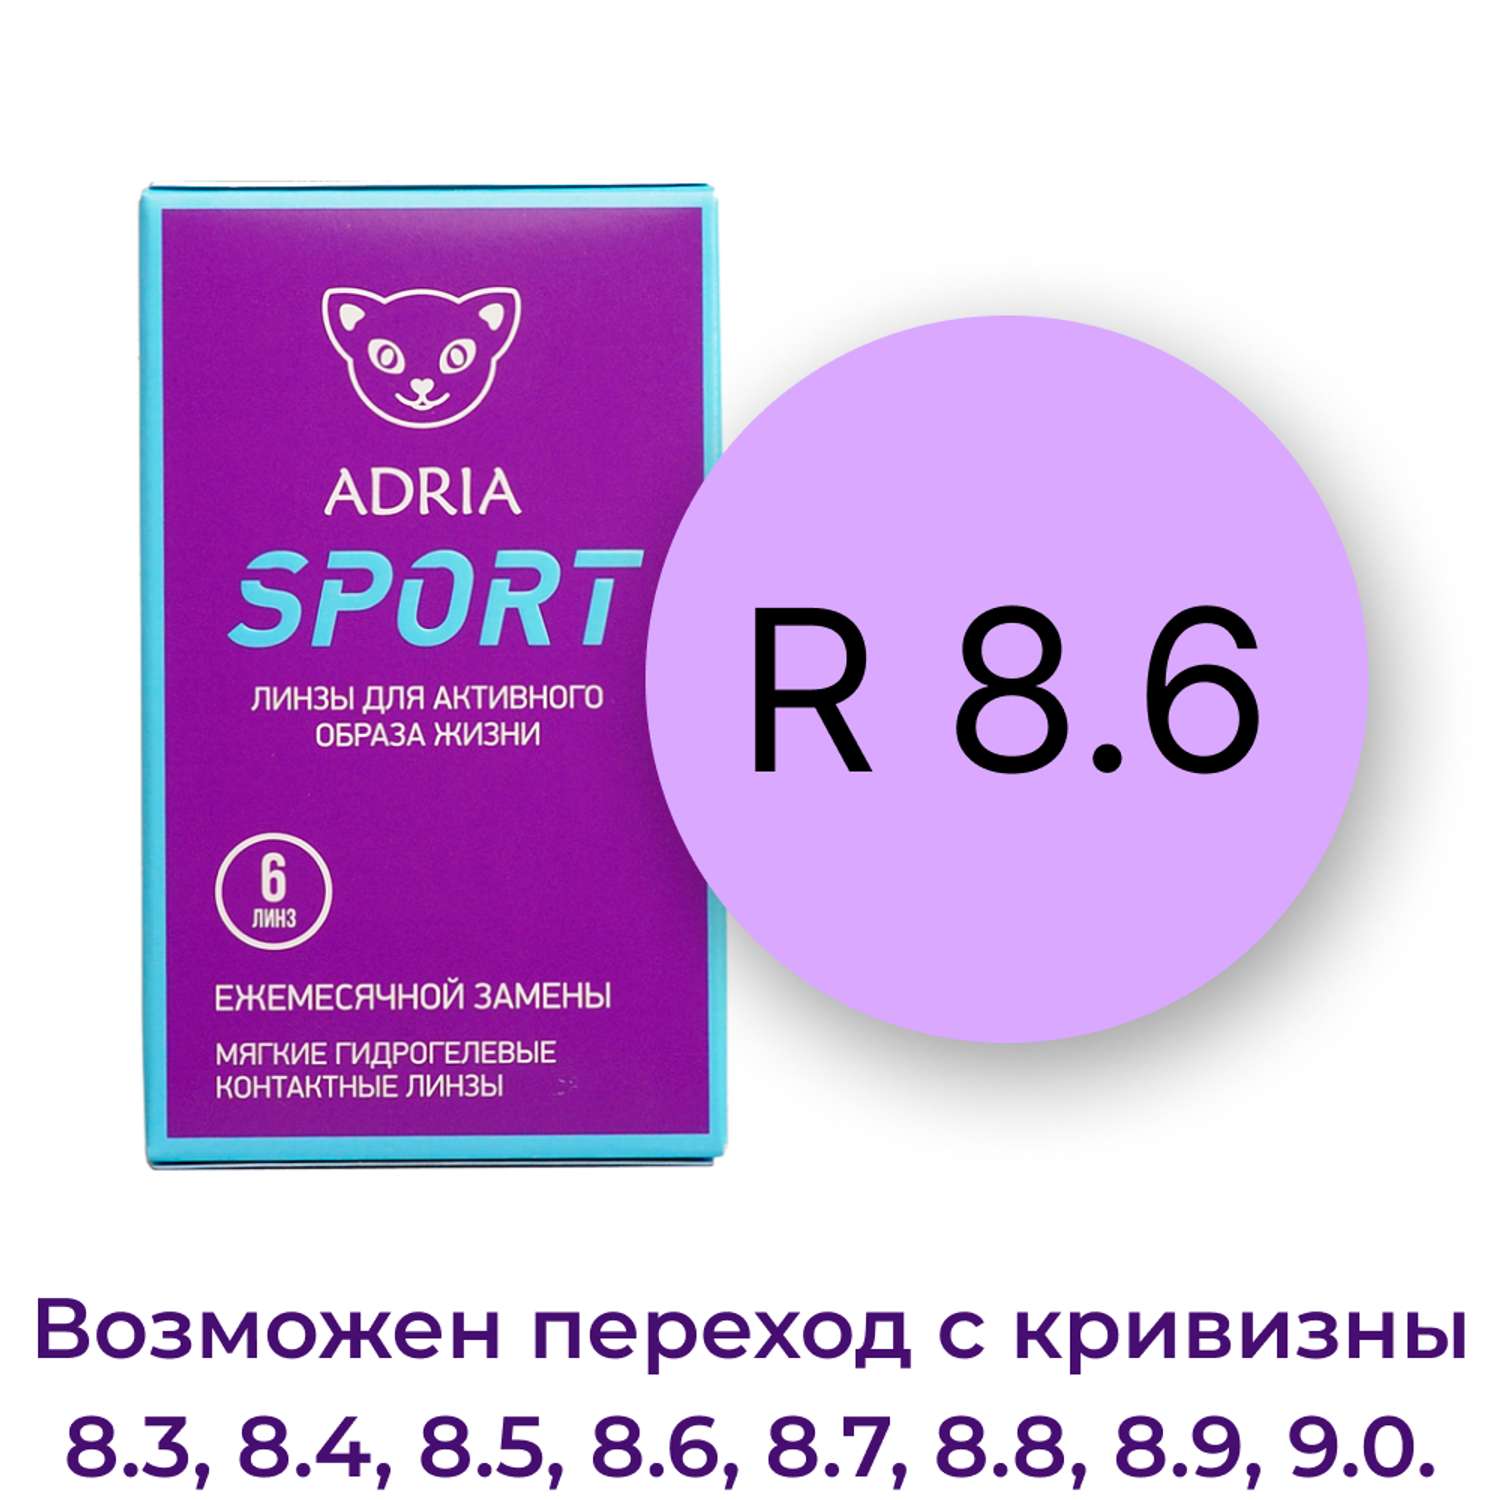 Контактные линзы ADRIA Sport 6 линз R 8.6 -5.25 - фото 3